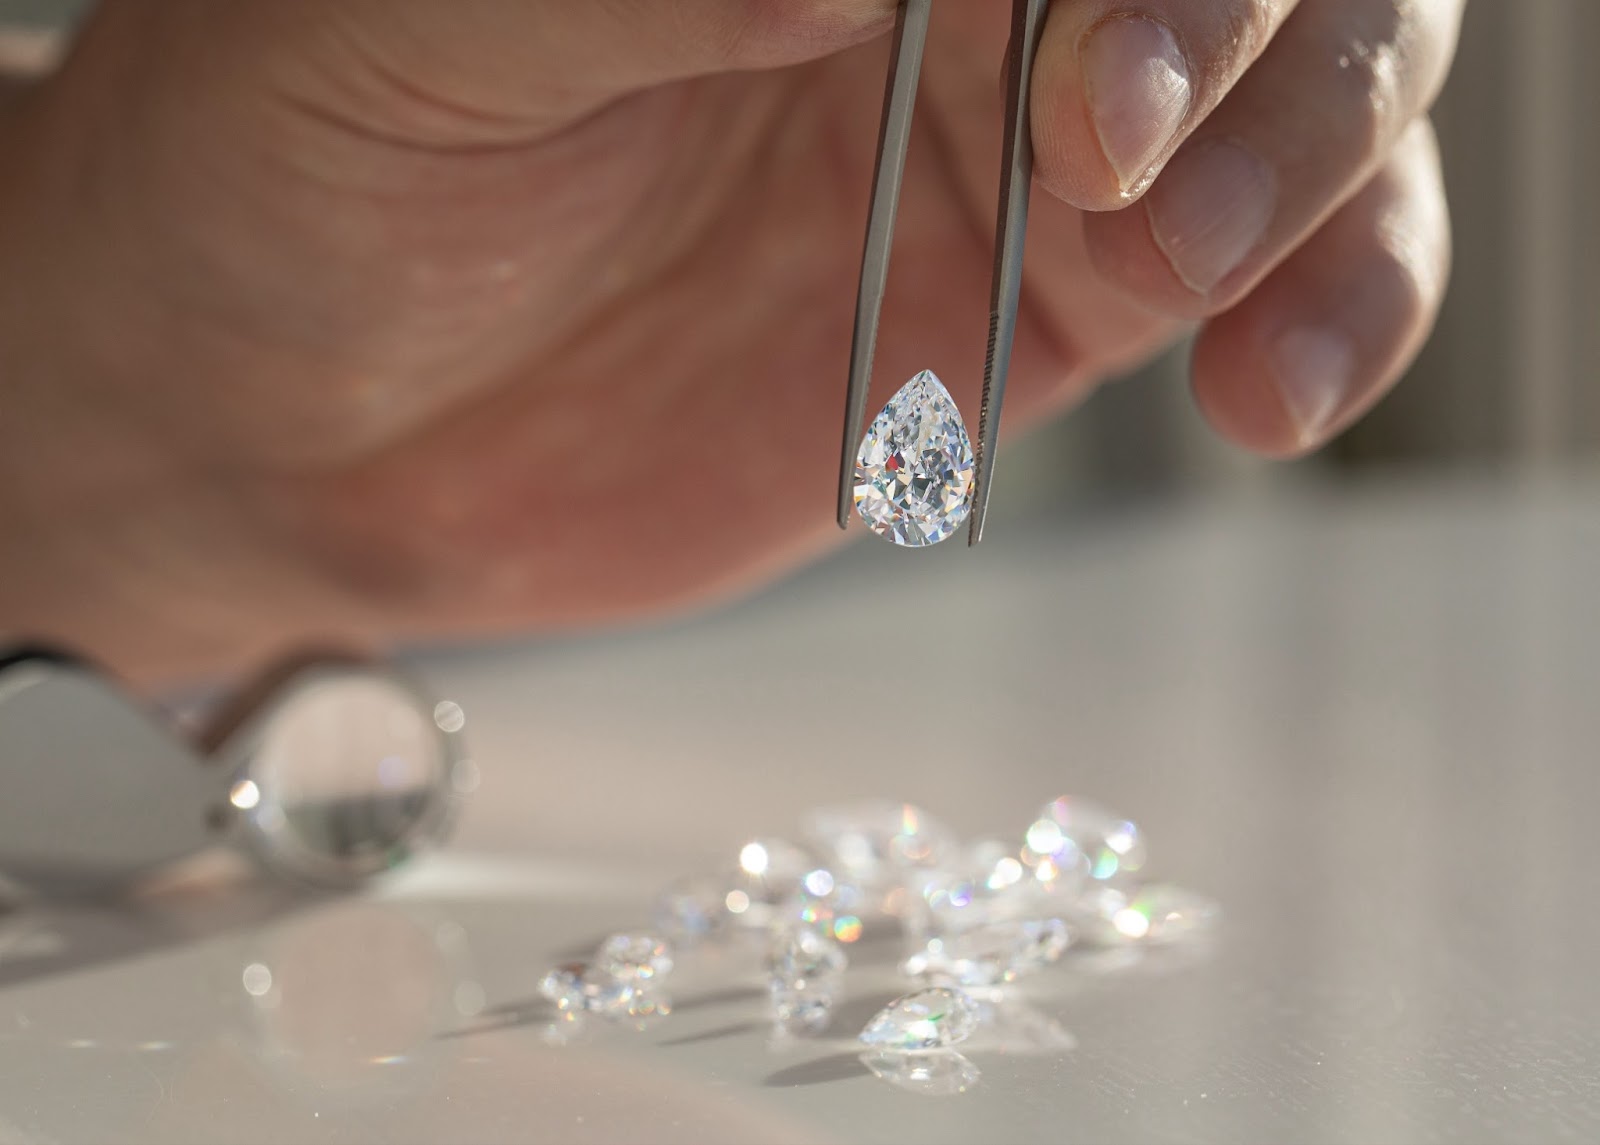 Aquae Jewels 璀璨钻石项链图片，附有真品证书，象征着该品牌对卓越和诚信的承诺。